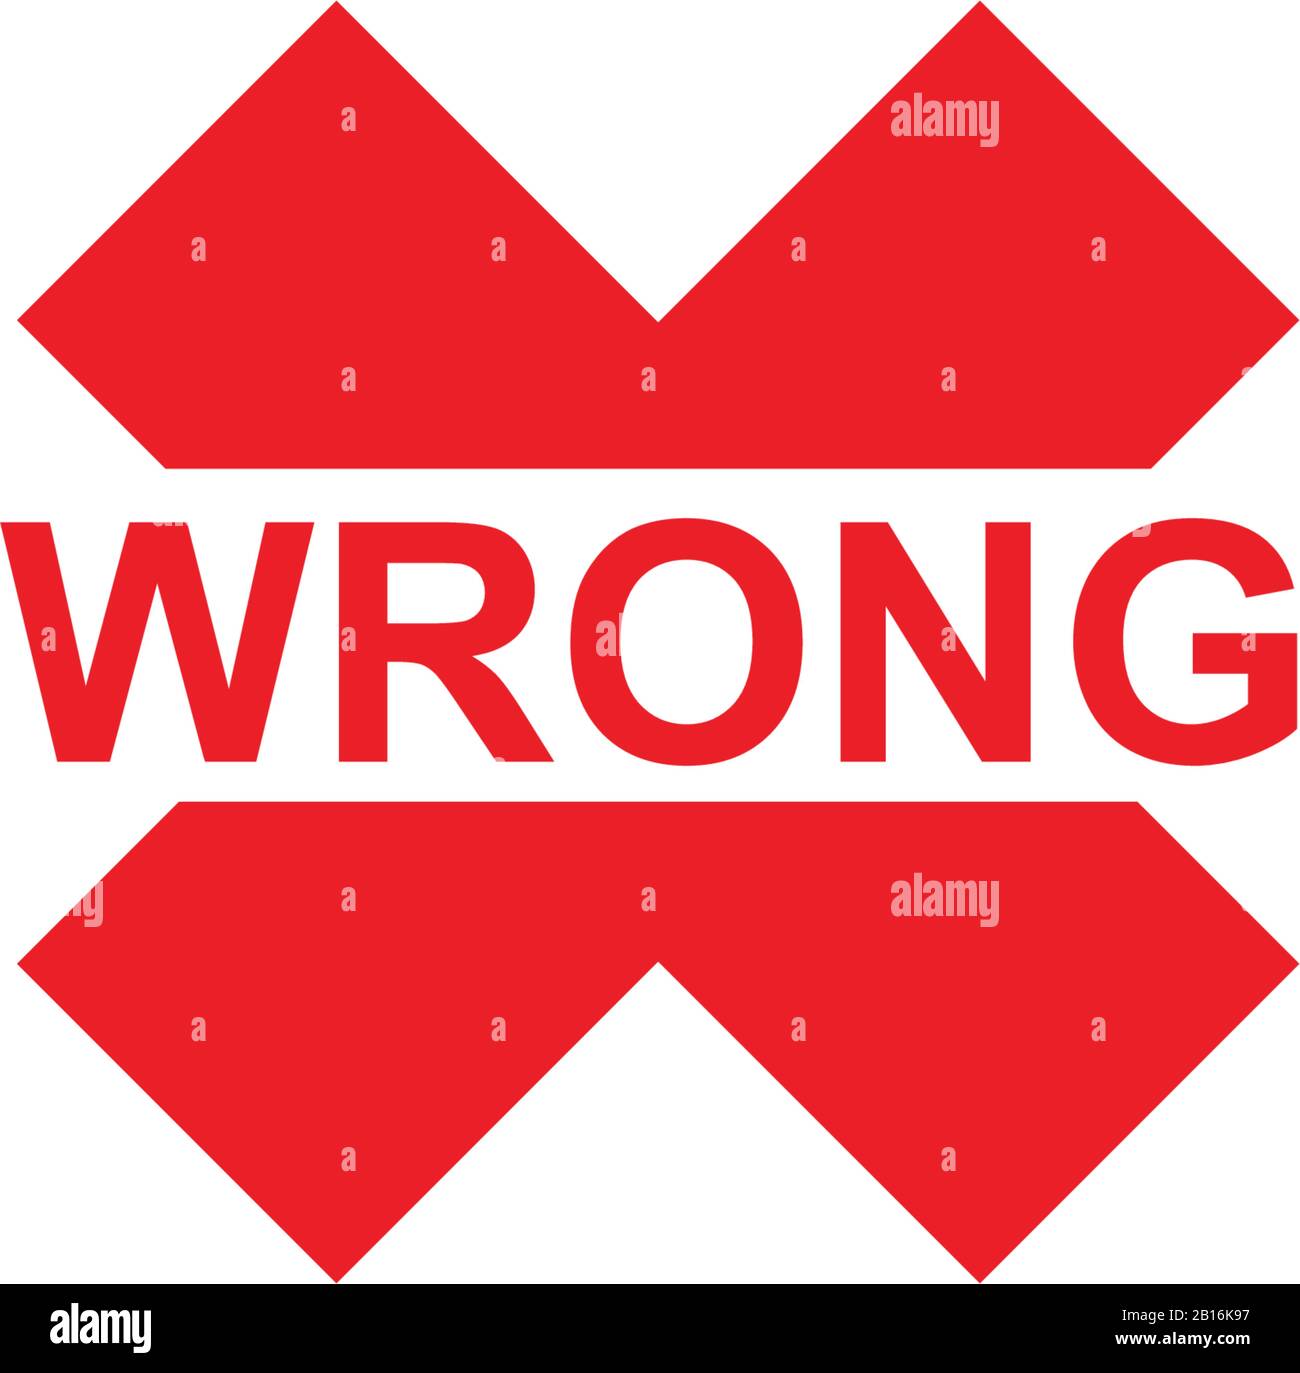 Pictogramme vectoriel X-Cross incorrect. Le style d'illustration est un symbole rouge plat emblématique sur fond blanc. Illustration de Vecteur